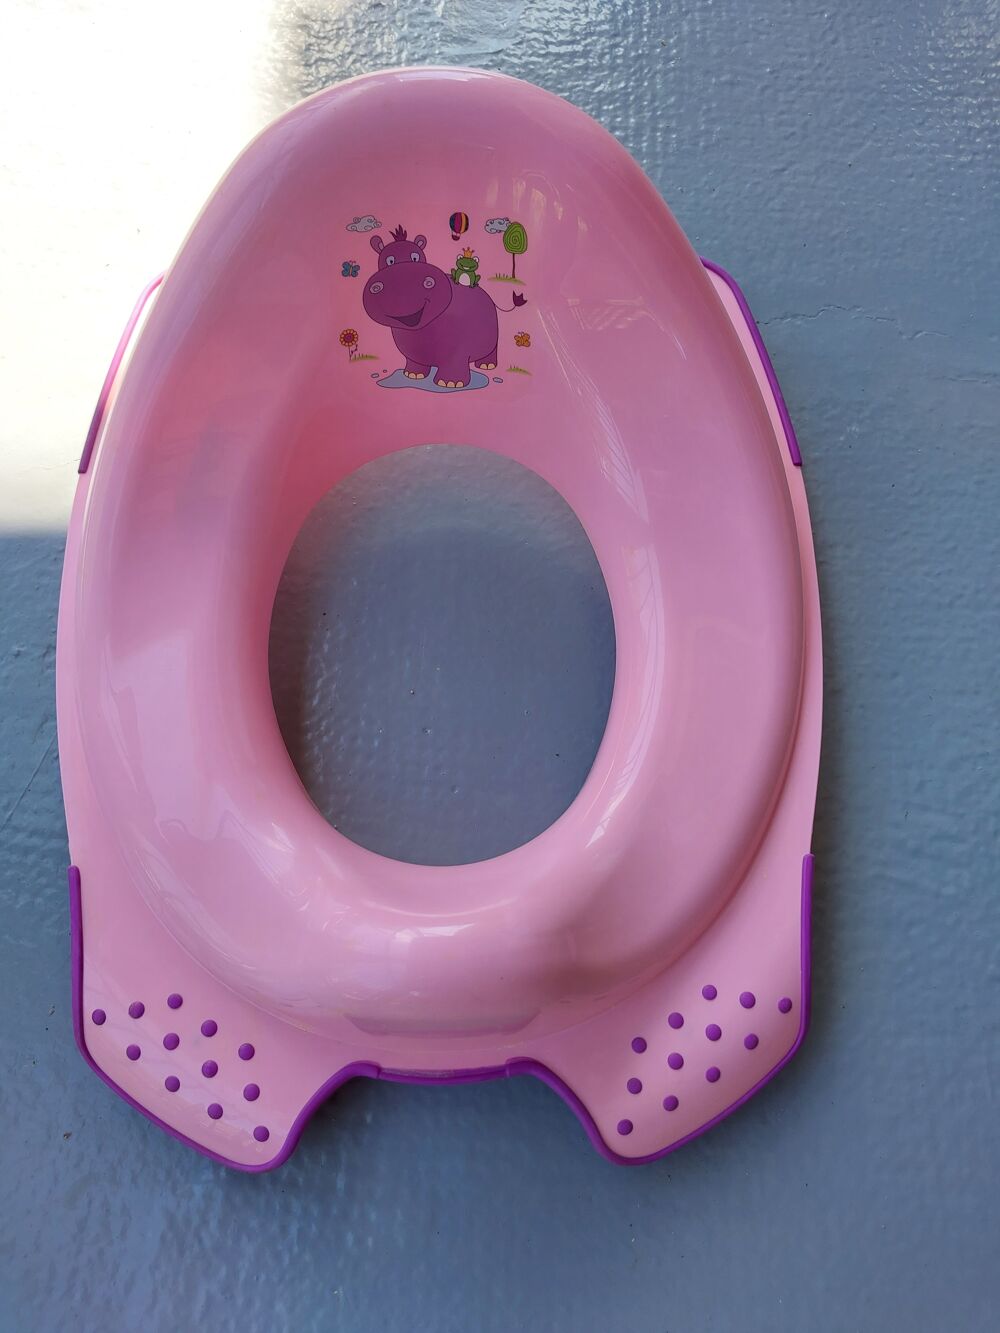 R&eacute;ducteur et tabouret pour toilette enfants Puriculture